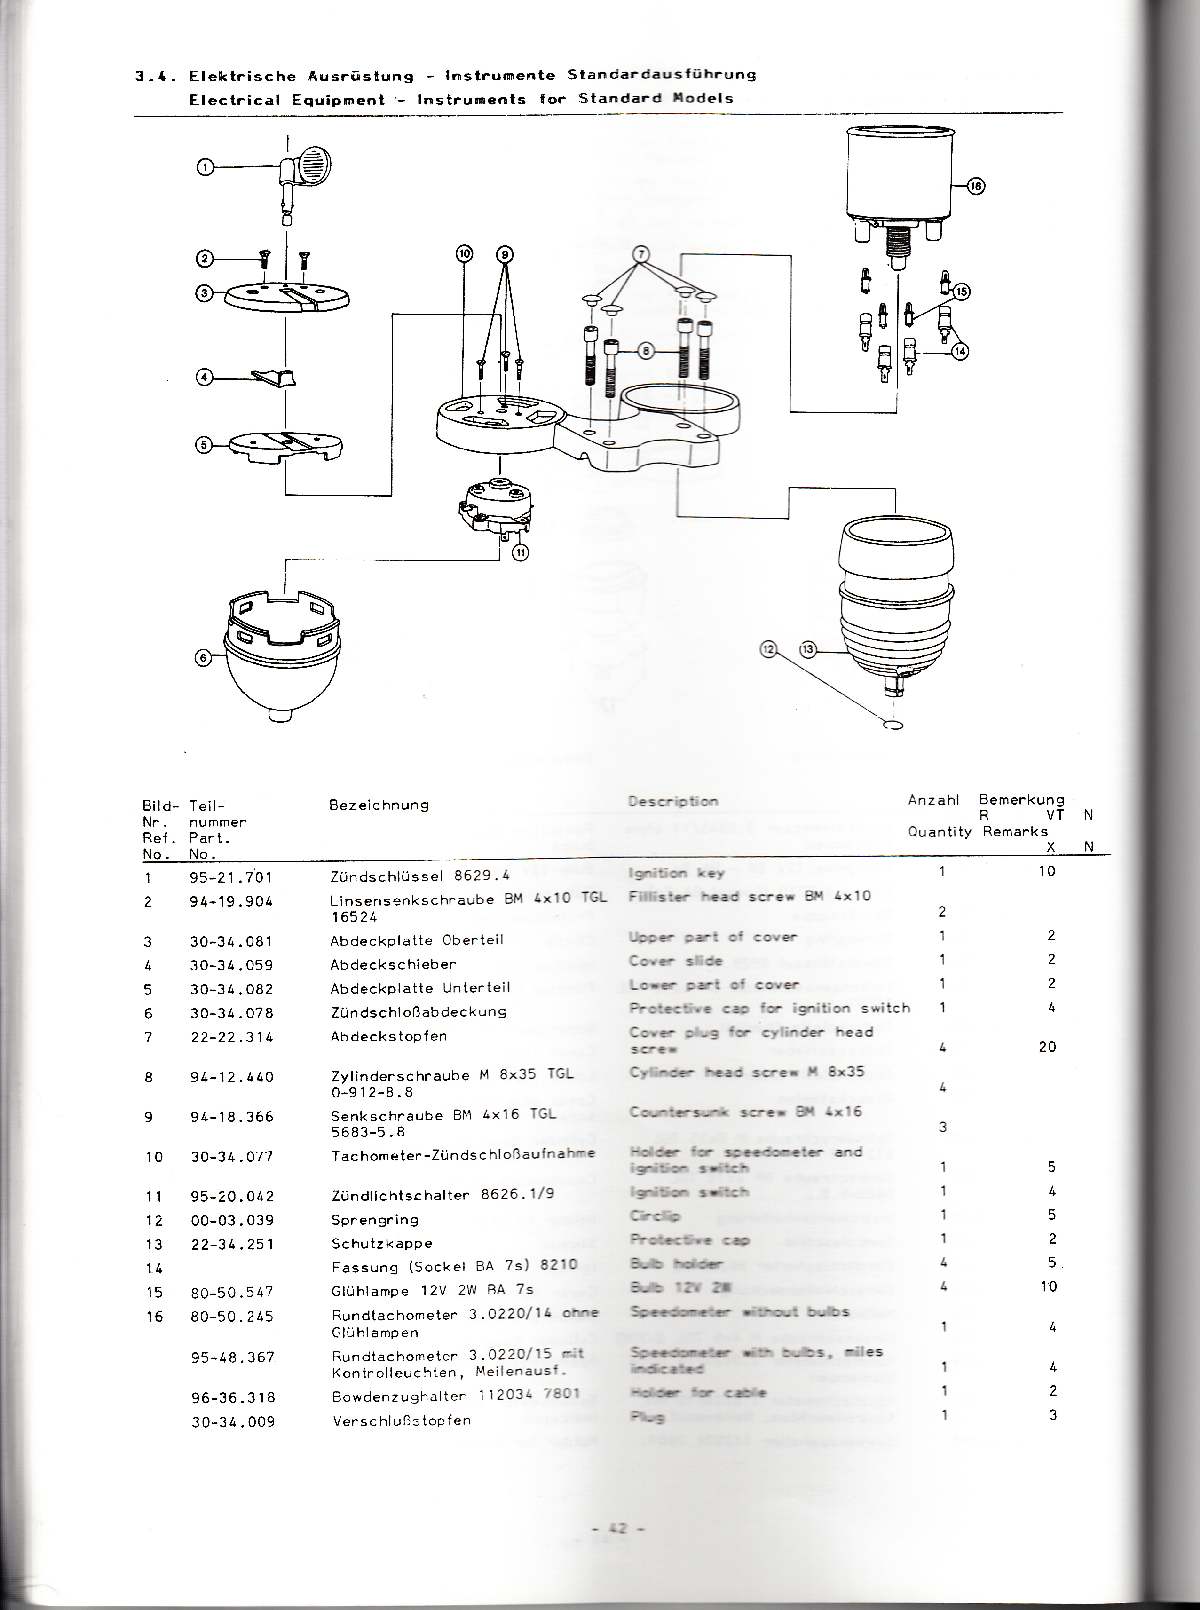 Katalog MZ 251 ETZ - 3-4. Elektrische Ausrüstung - Instrumente Standardausführung 